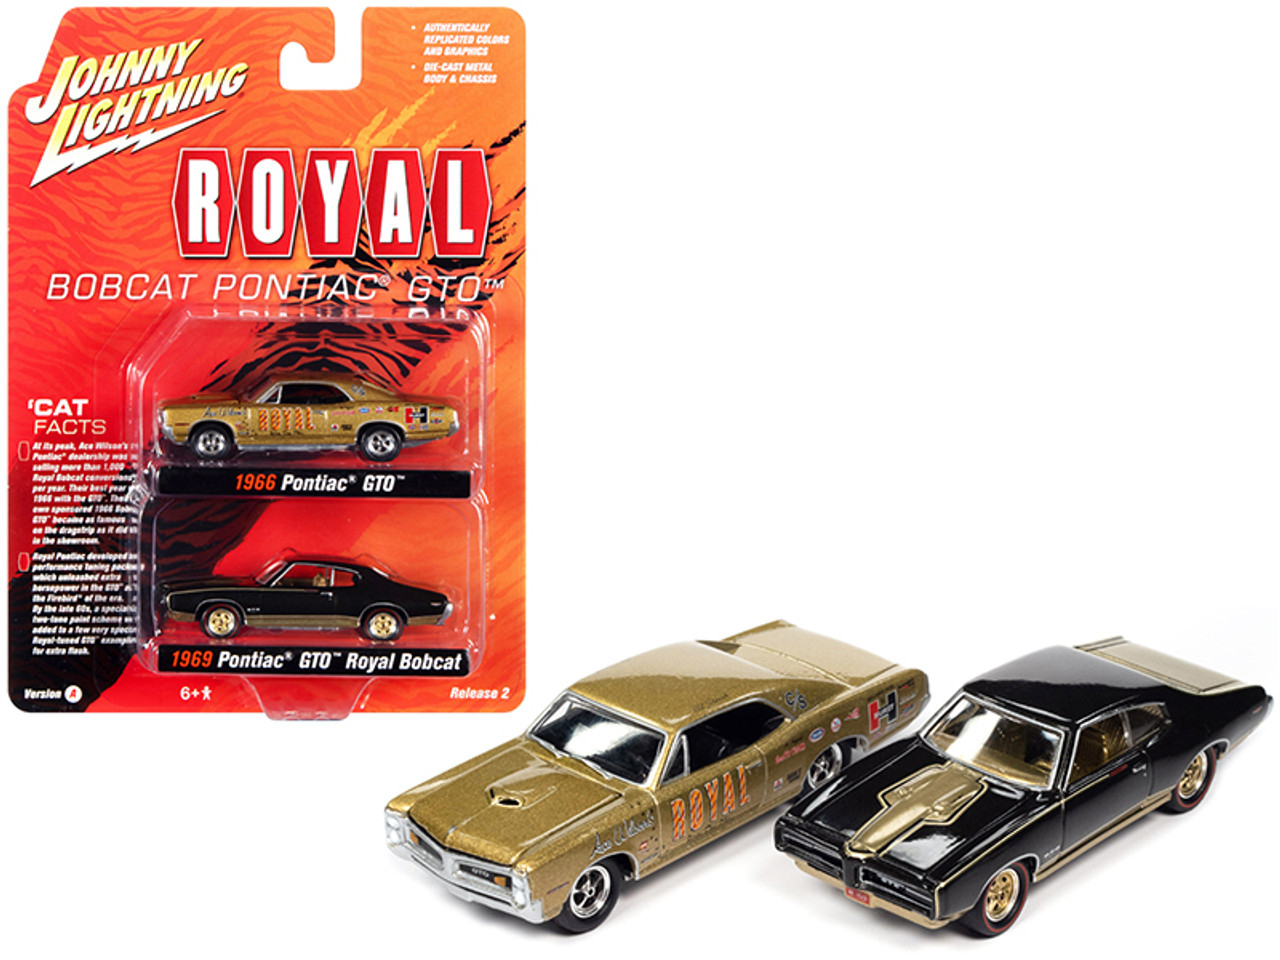 1966 Pontiac GTO "Royal" Gold and 1969 Pontiac GTO Royal Bobcat Espresso Brown "Pontiac Royal" Set of 2 pieces 1/64 Diecast Model Cars by Johnny Lightning